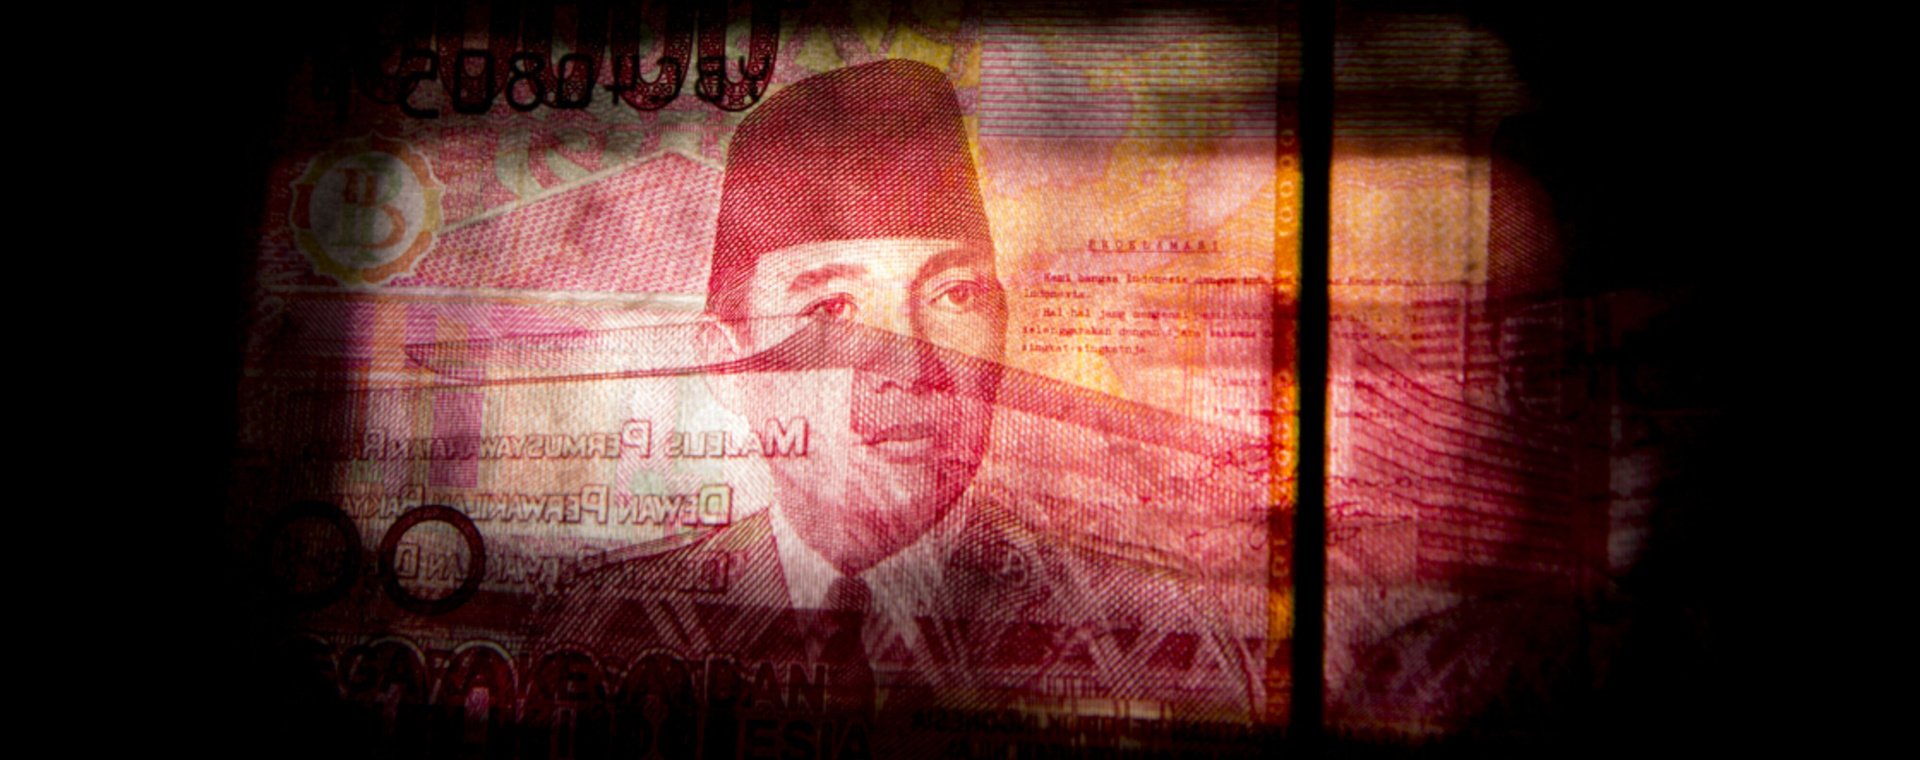 Potret wajah Mantan Presiden Sukarno dalam uang lembar Rp100.000. Rasio belanja negara terhadap PDB Indonesia merupakan yang terendah dibandingkan negara-negara G20, sehingga muncul keinginan untuk terus meningkatkan belanja negara. - Bloomberg/Brent Lewin